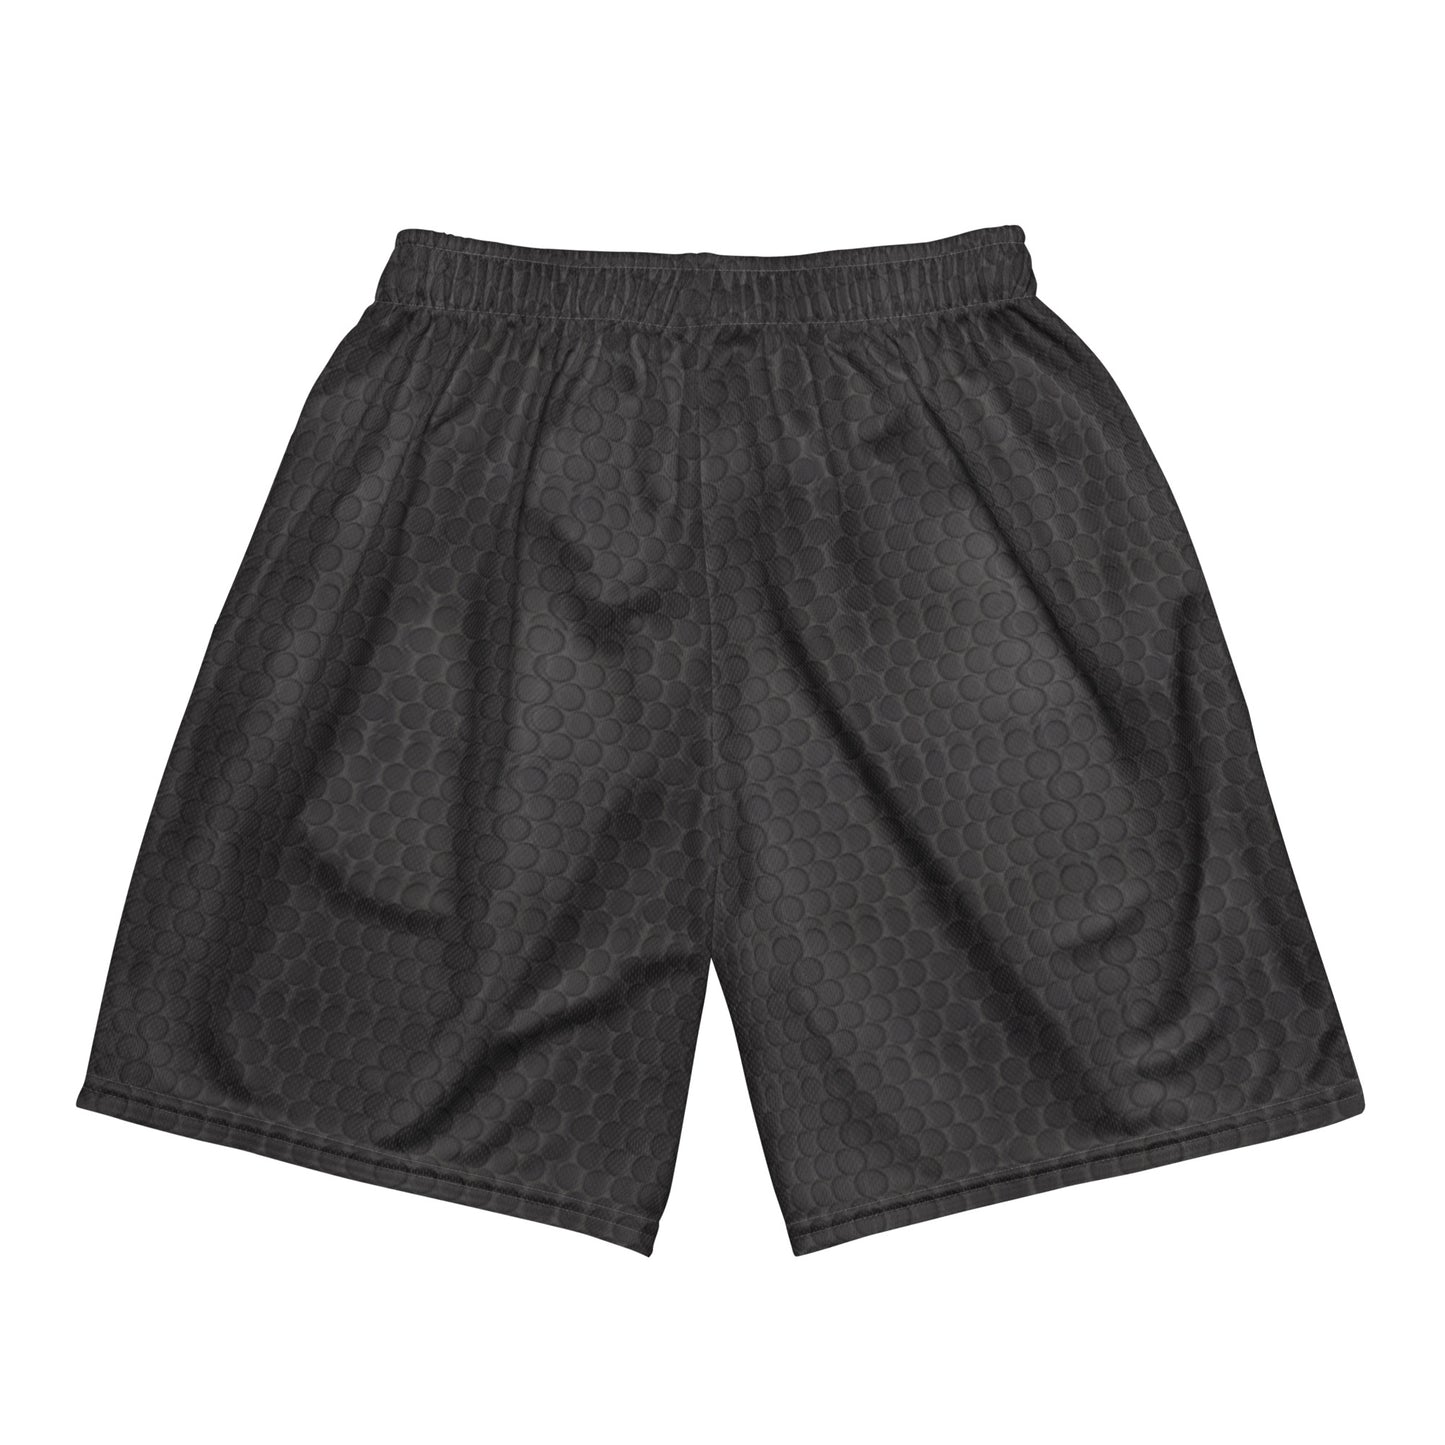 Black Penny Tile mesh shorts